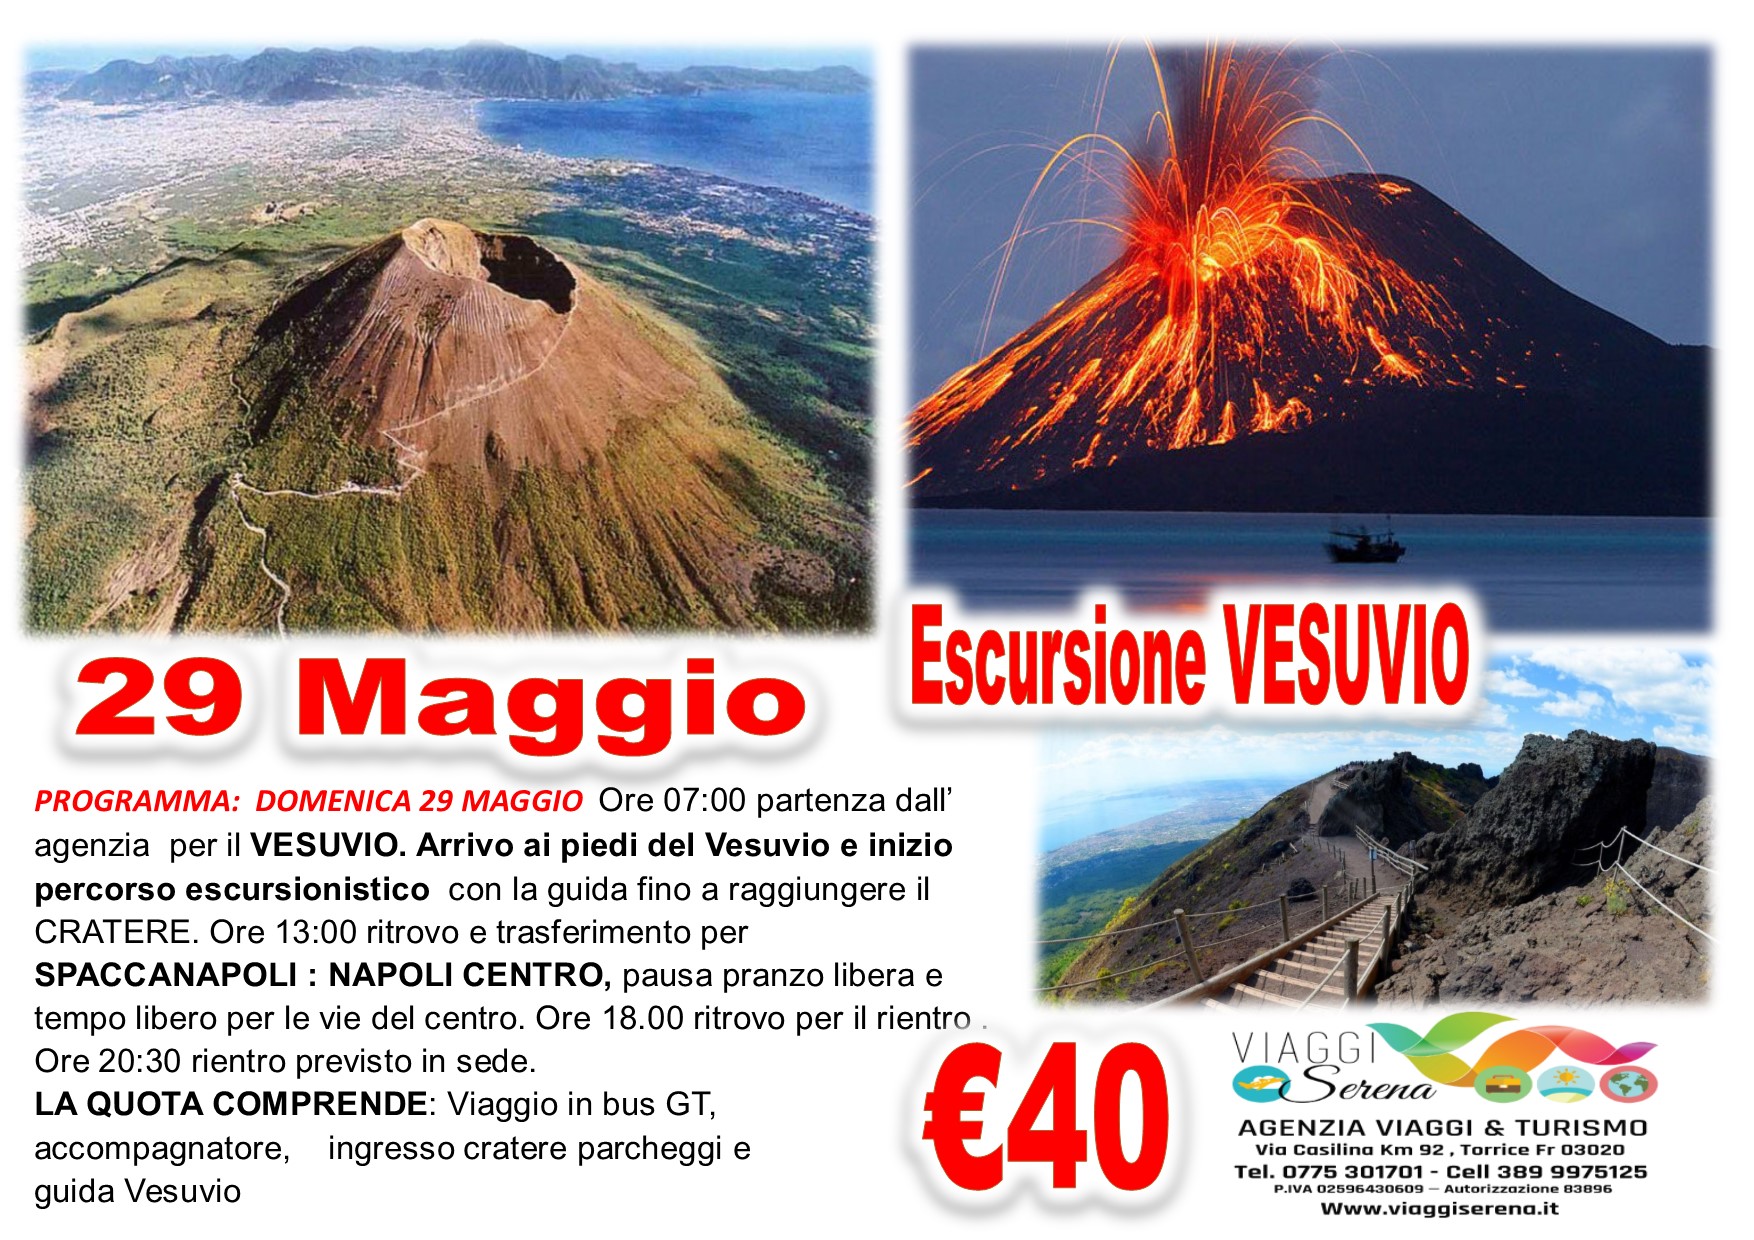 Viaggi di Gruppo: Escursione VESUVIO & Napoli 29 Maggio €40,00